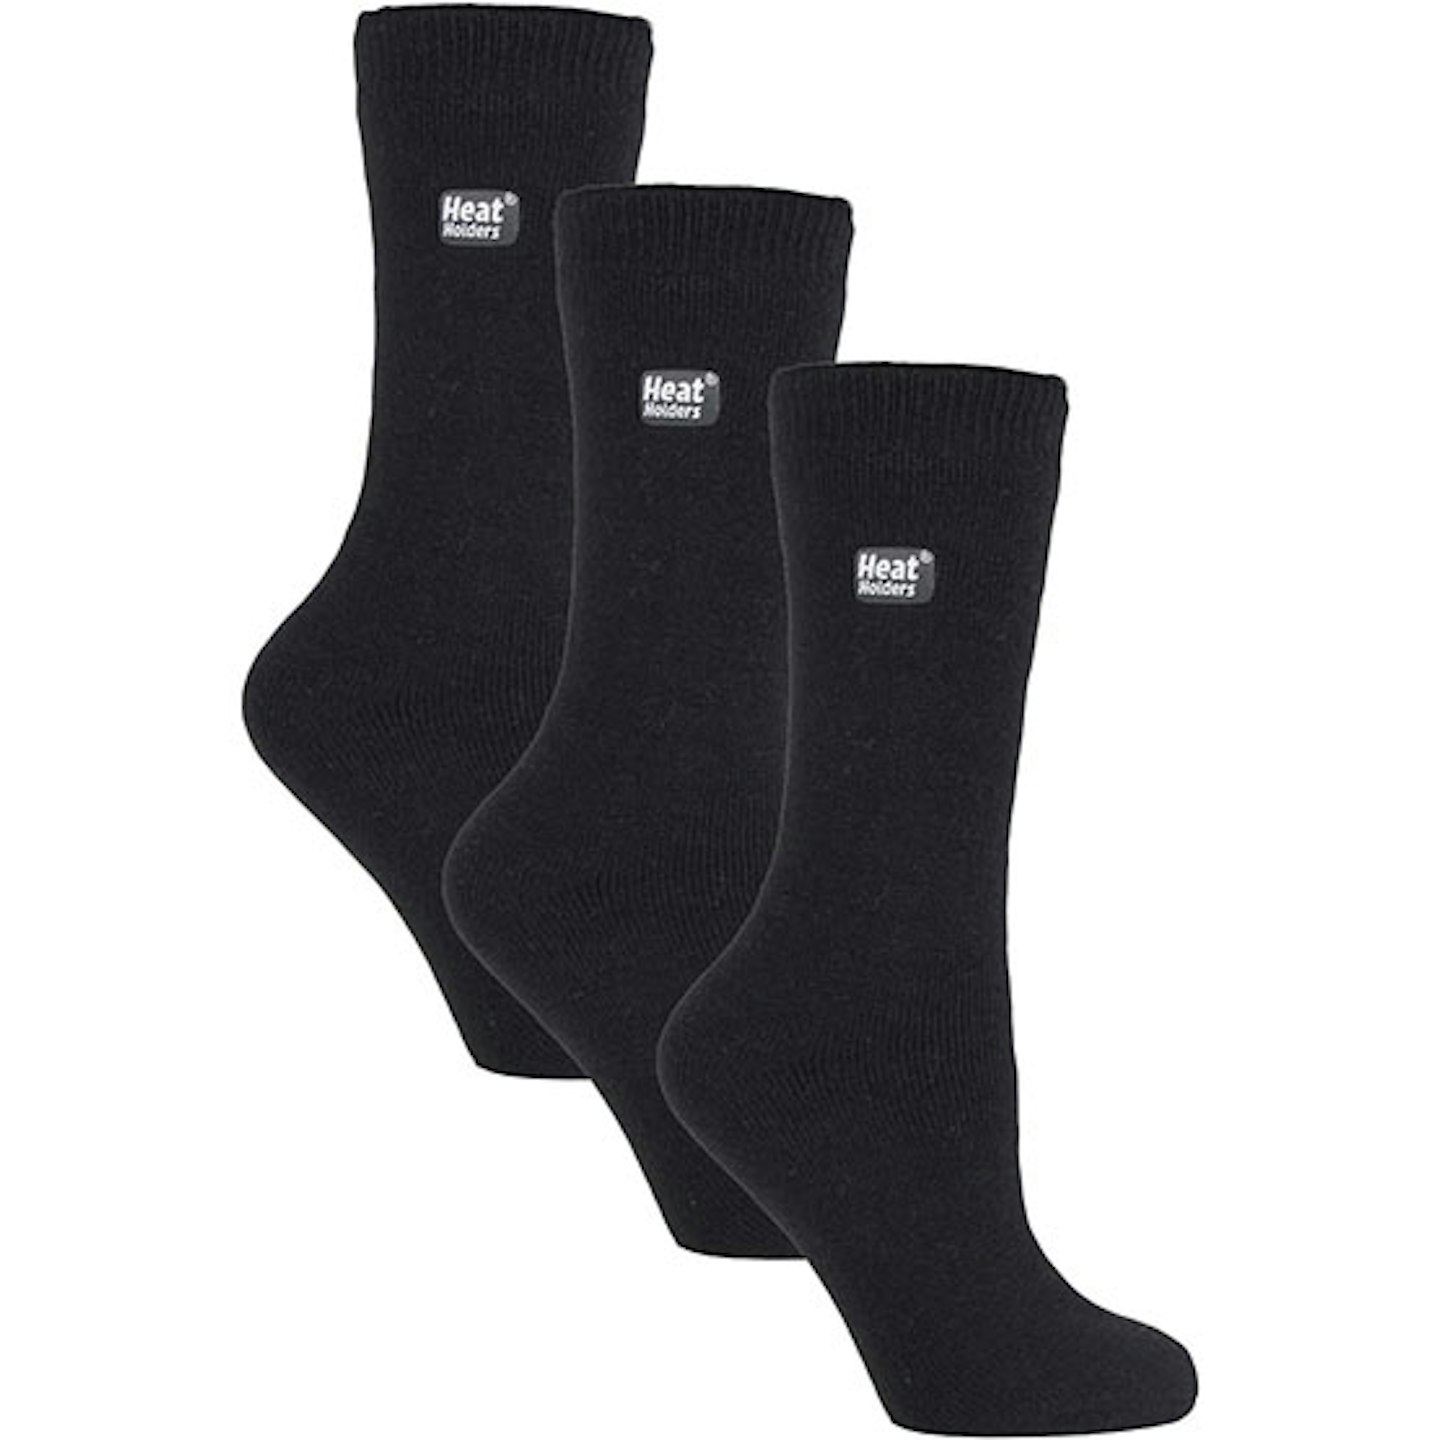 Heat holders thermal socks